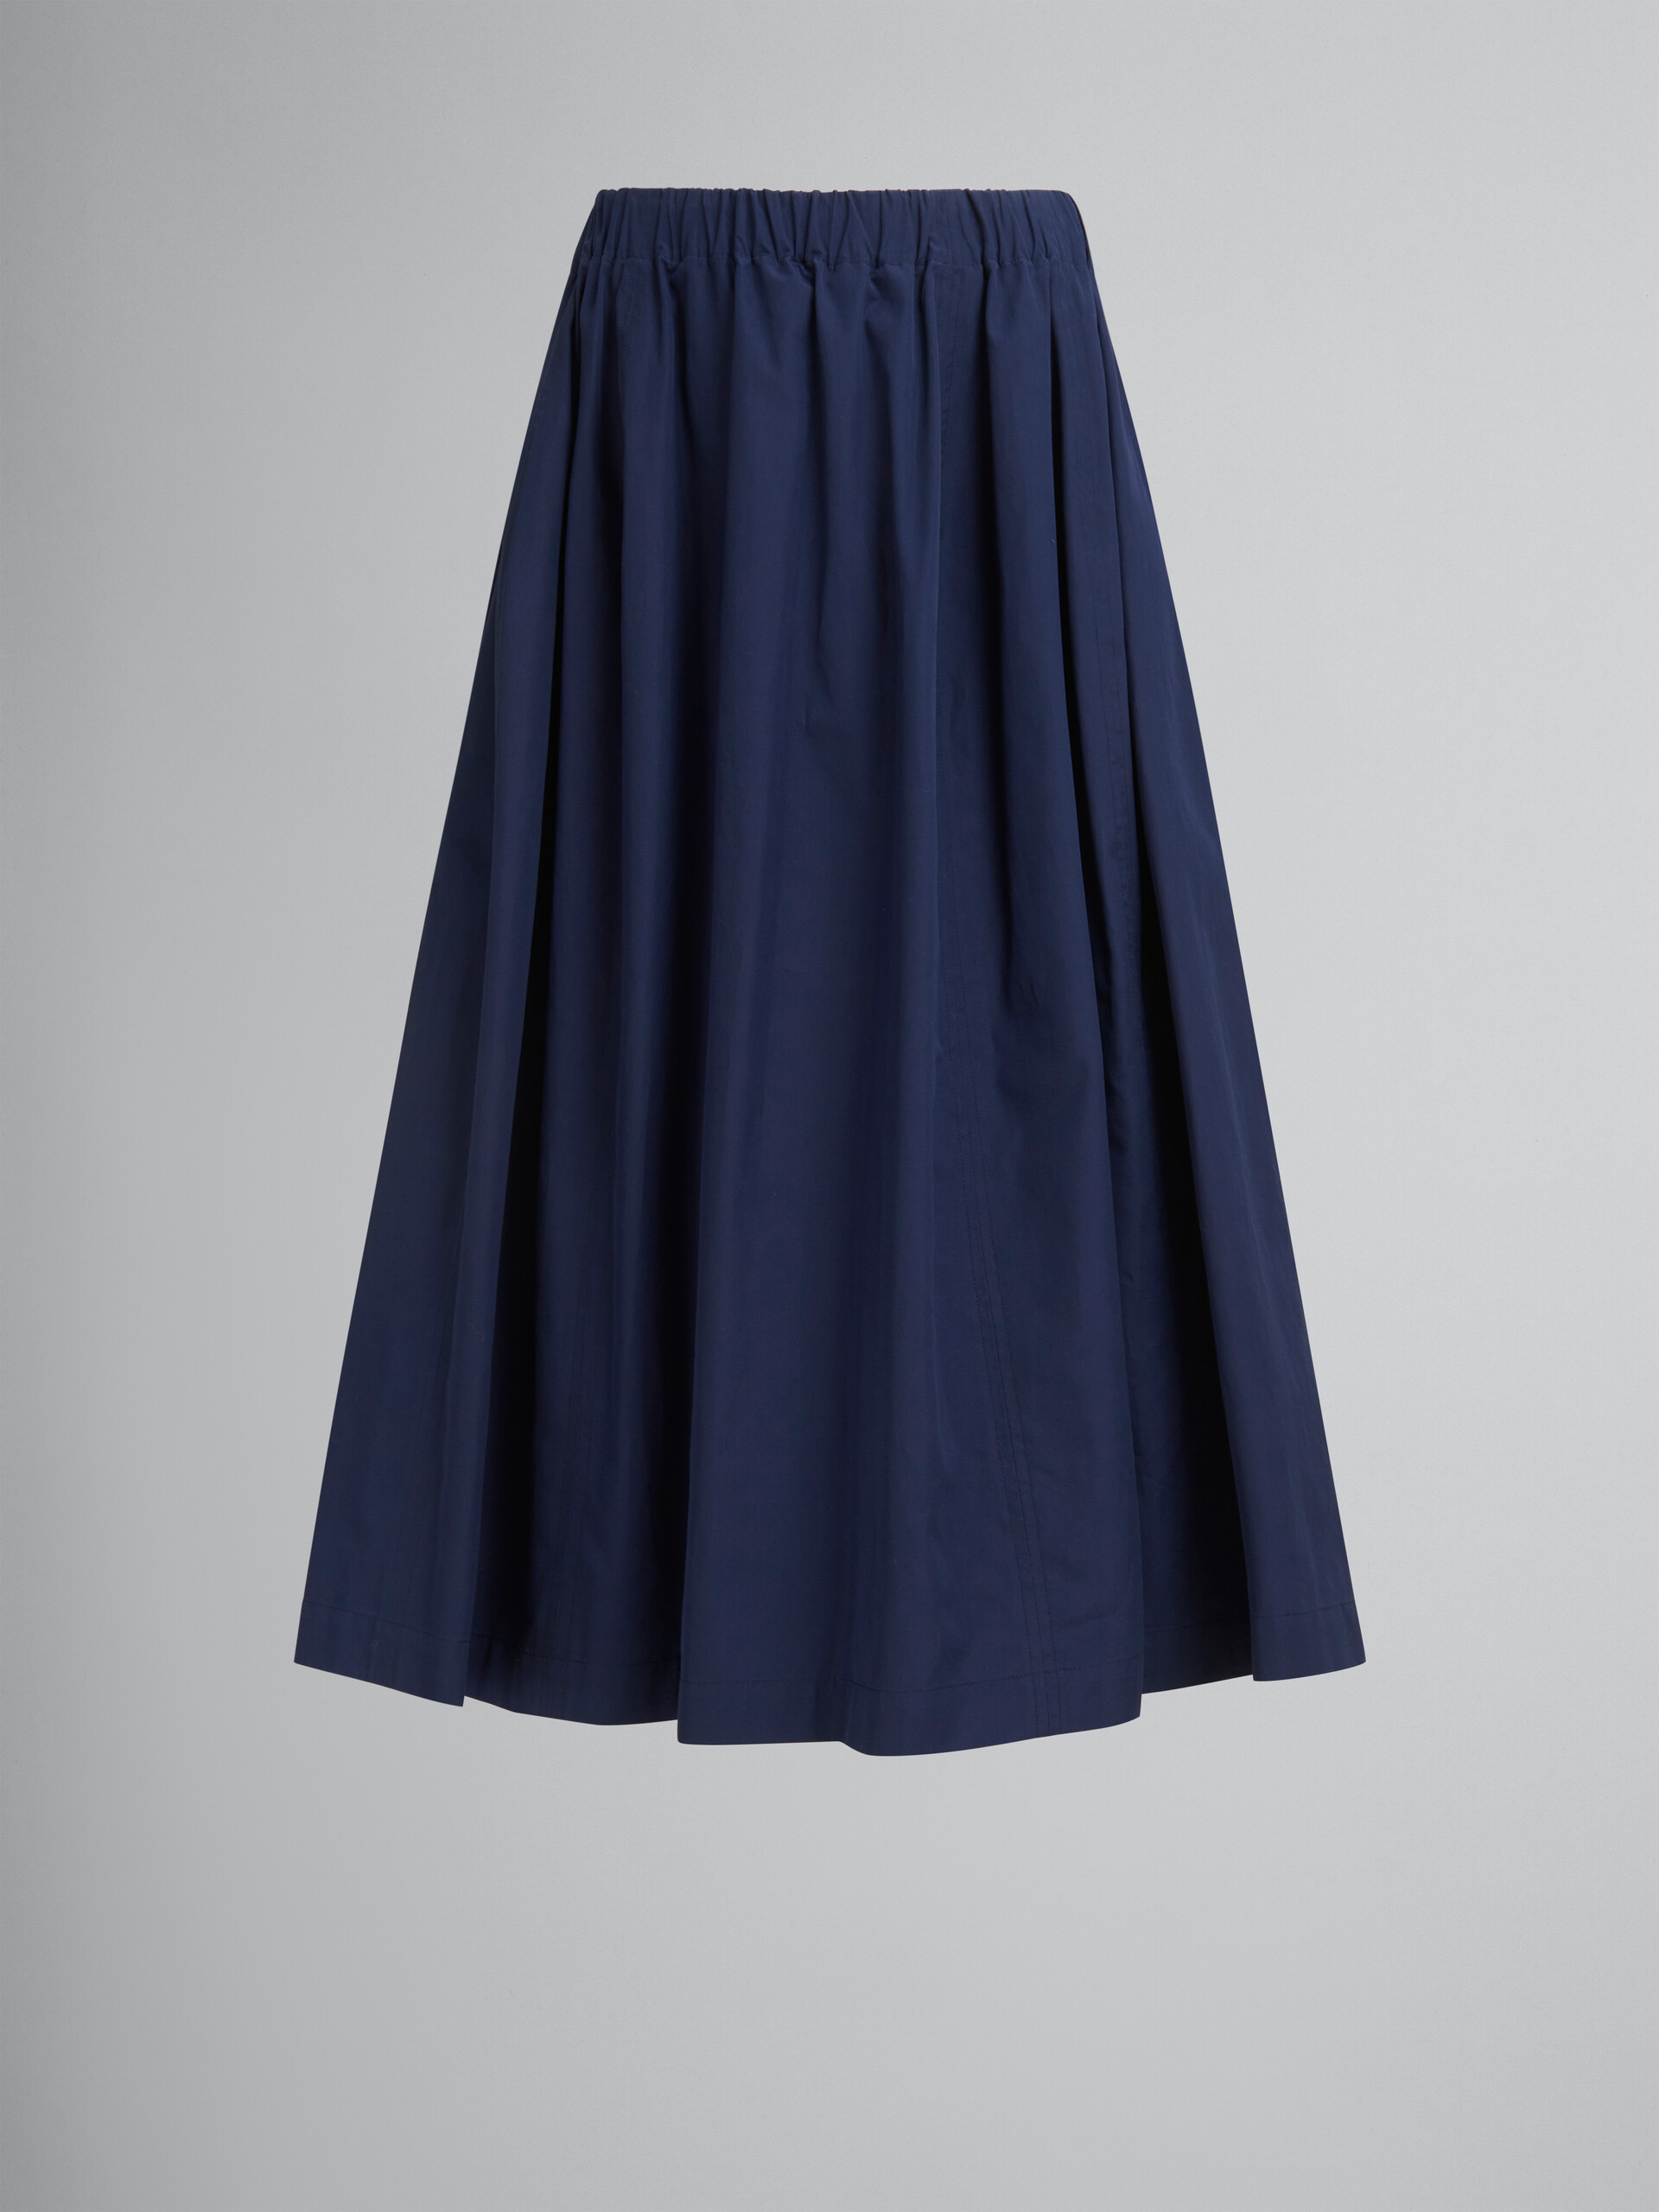 Falda midi elástica azul de popelina orgánica - Faldas - Image 1